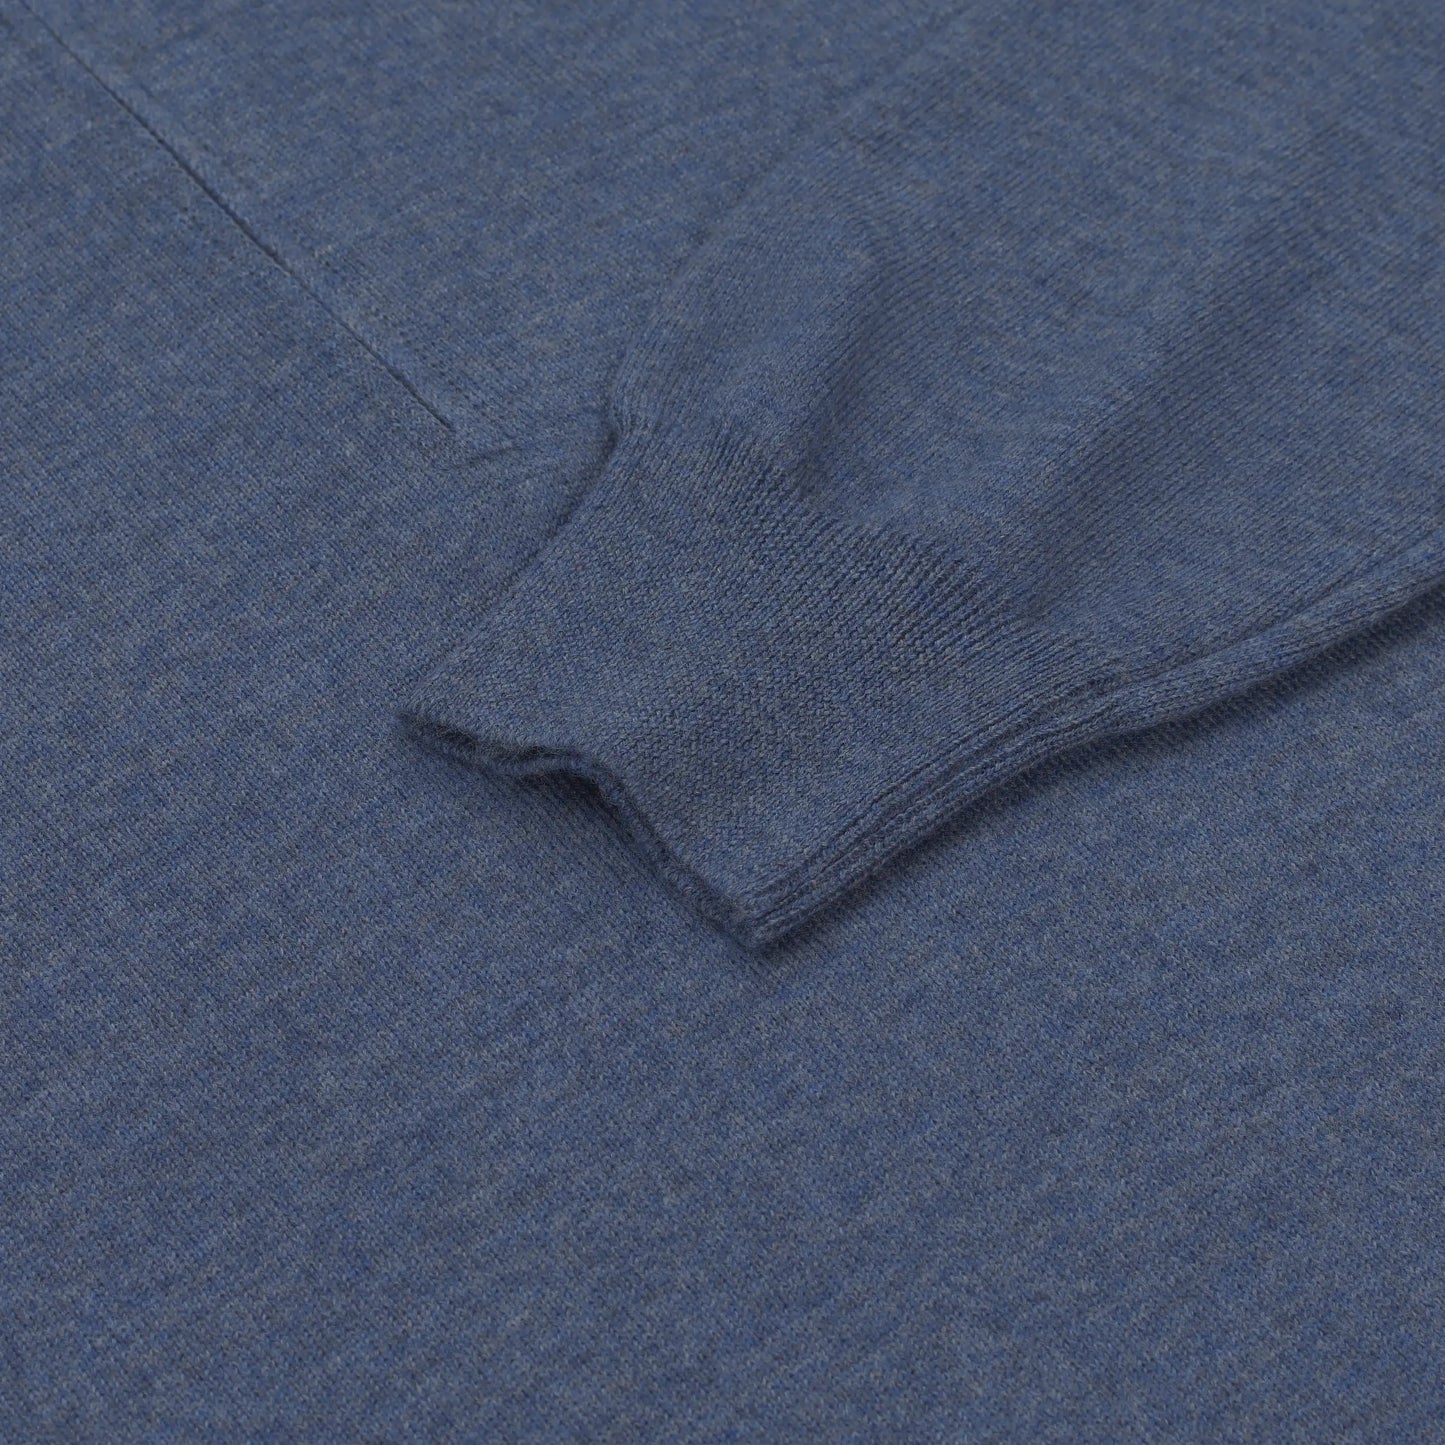 Wool Half-Zip Sweater in Royal Blue Melange